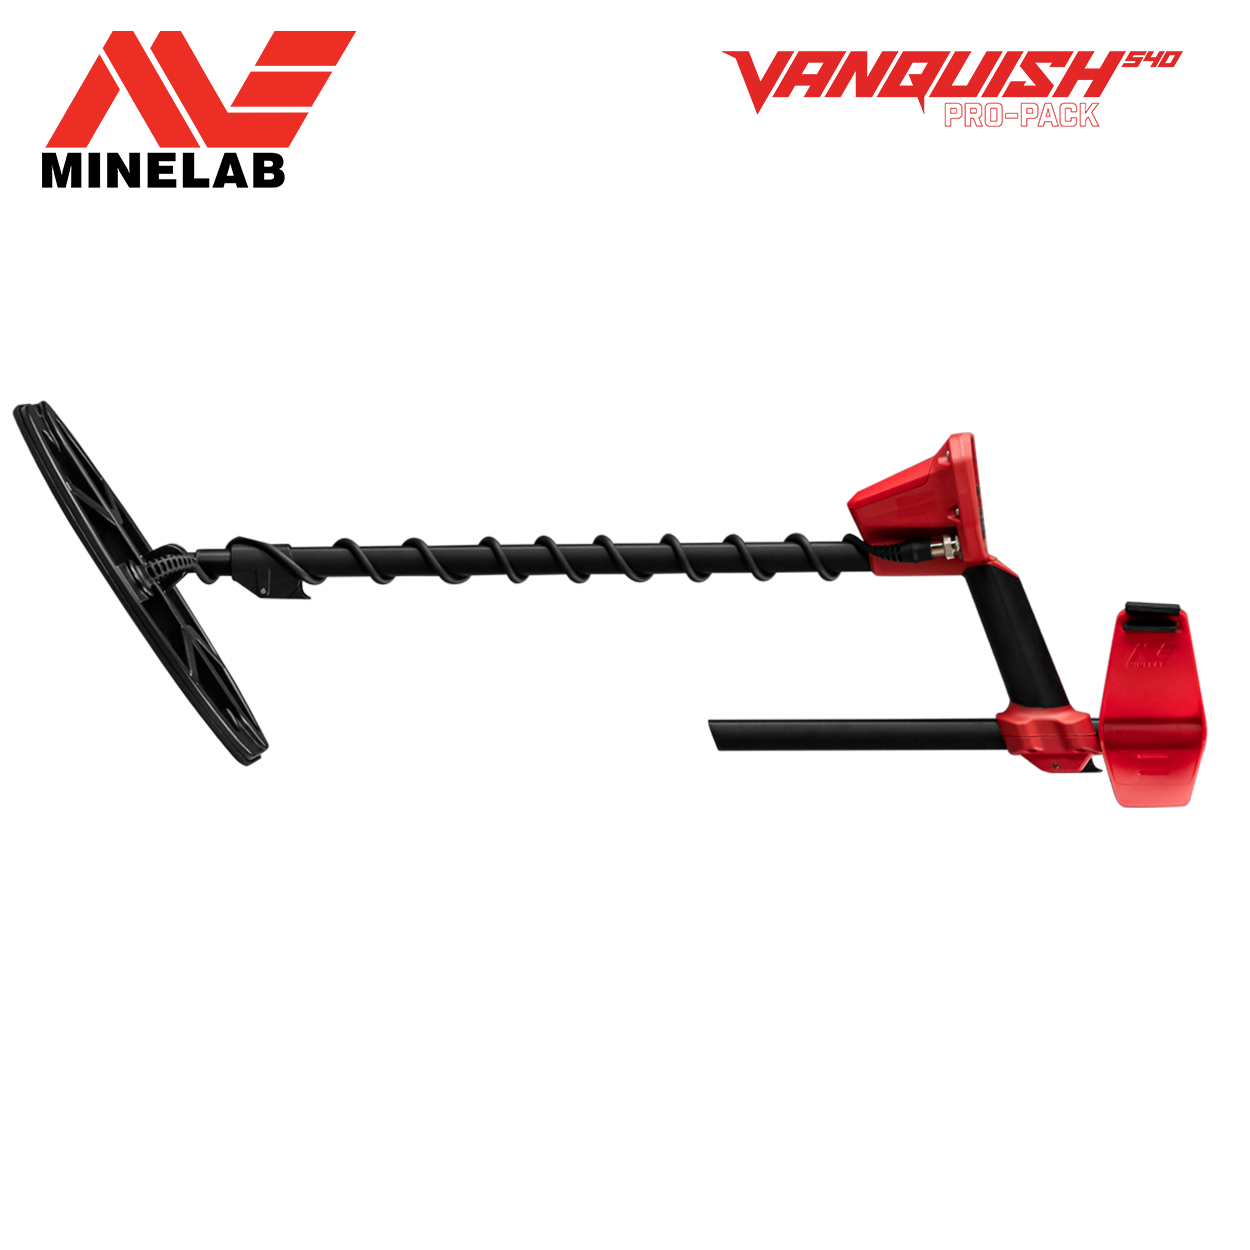 MINELAB Vanquish 540 Pro Paket Metalldetektor Multifrequenz